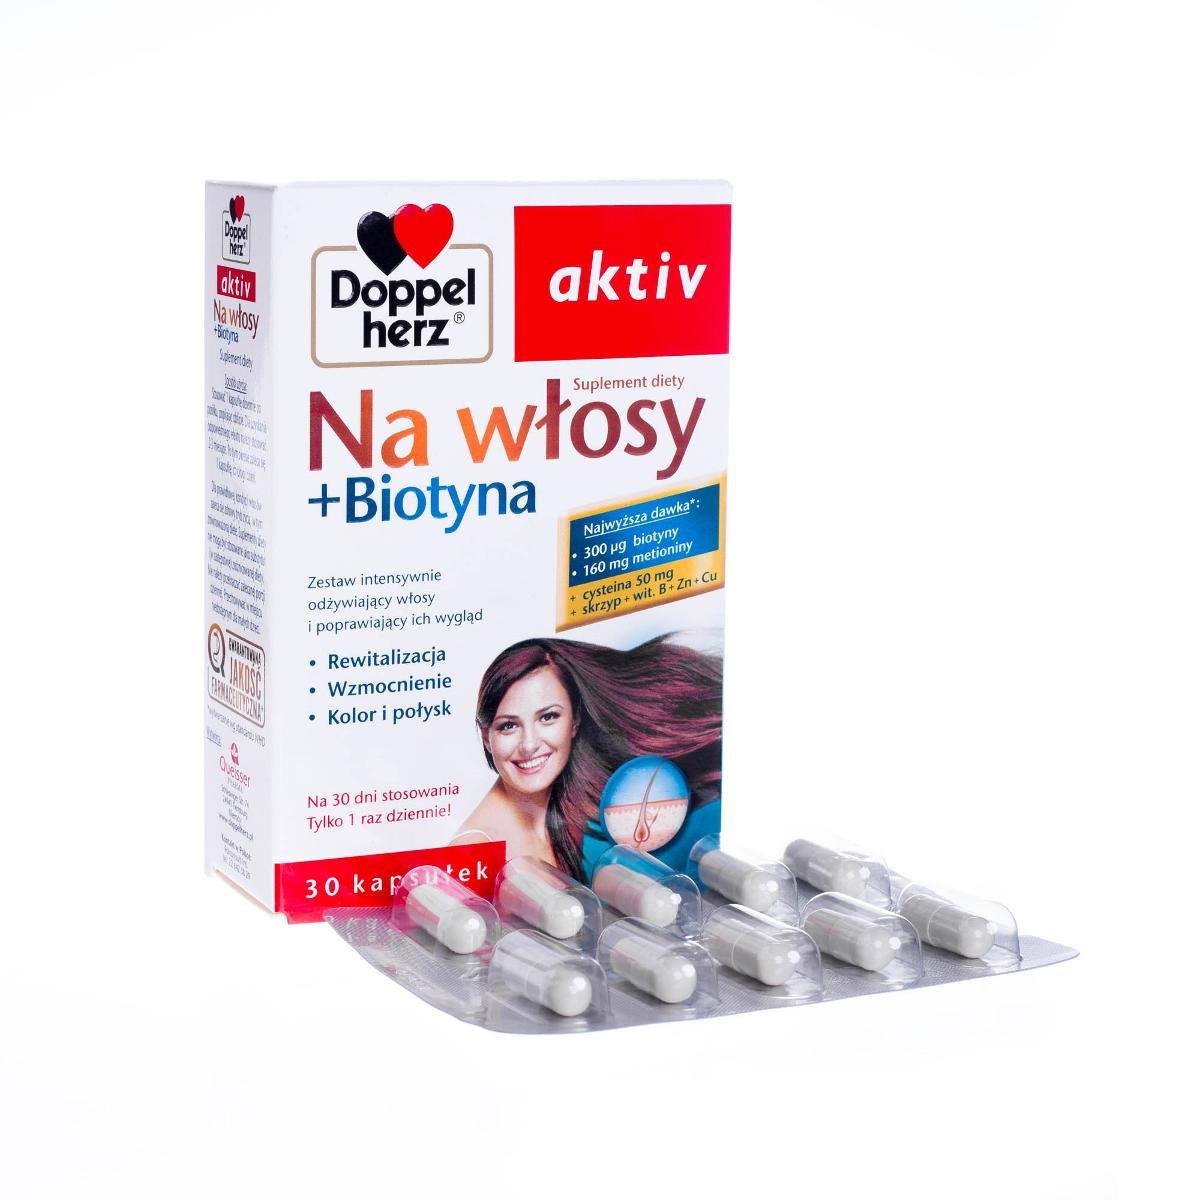 Фото - Шампунь Doppelherz Queisser Pharma,  Aktiv Na Włosy + Biotyna, Suplement diety, 30 